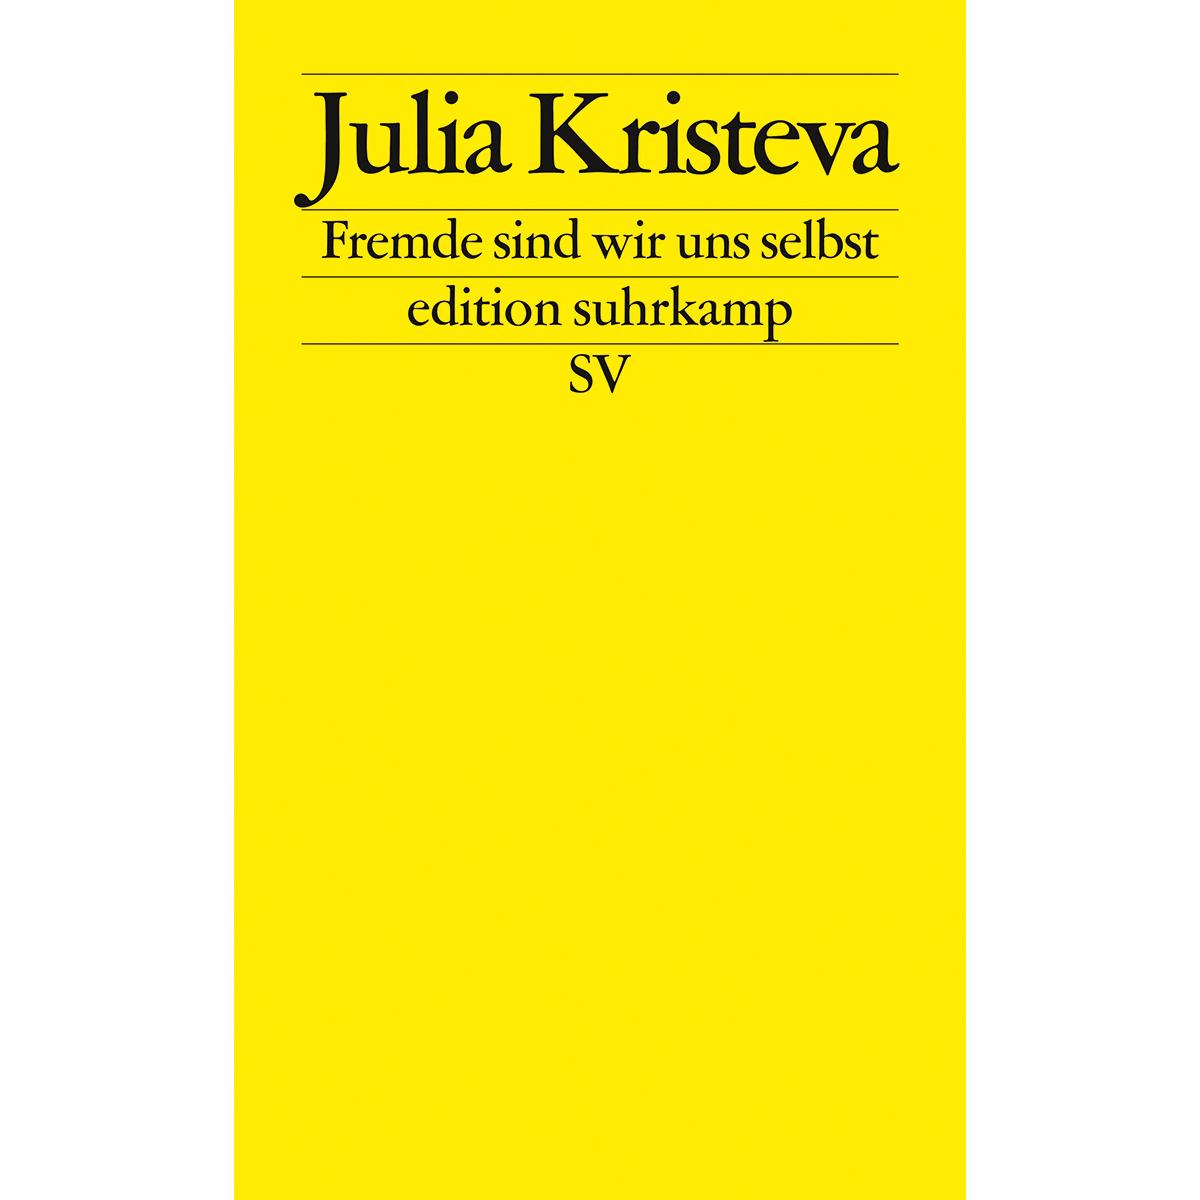 Fremde sind wir uns selbst (edition suhrkamp) - Julia Kristeva